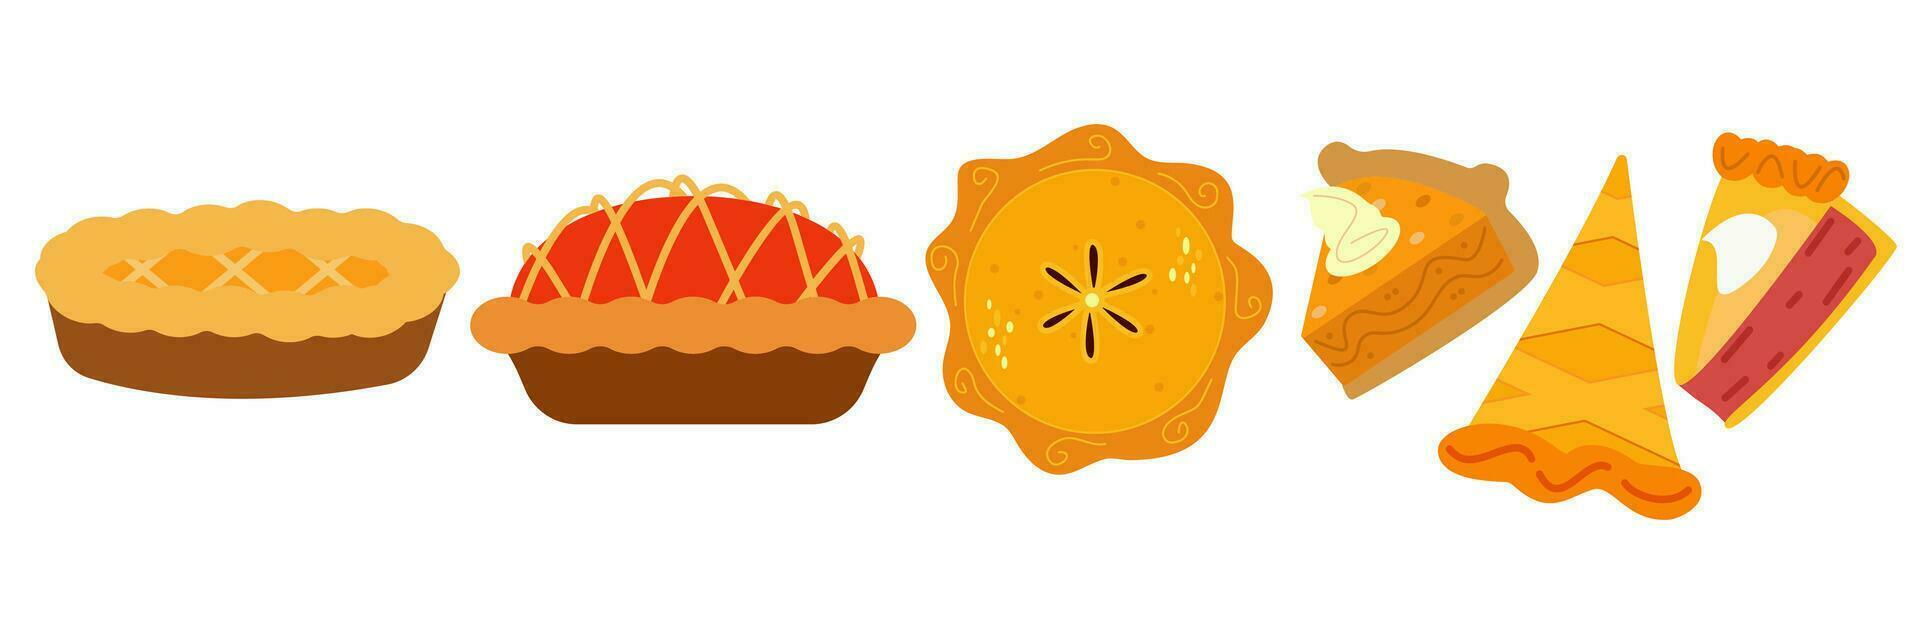 Kuchen Vektor Illustration.Thanksgiving und Urlaub Kürbis Kuchen.